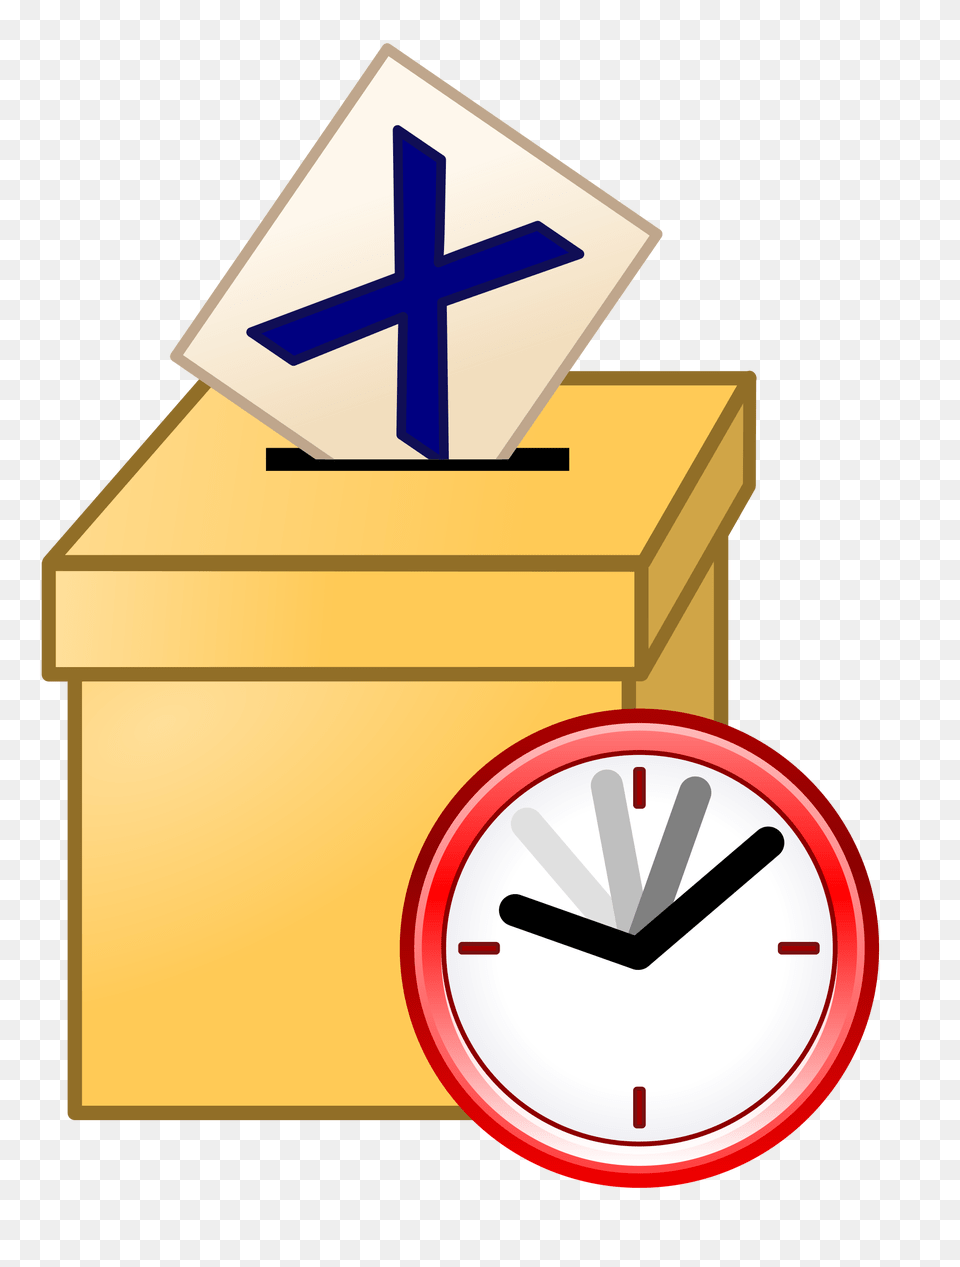 Ballot Box Current, Analog Clock, Clock, Cardboard, Carton Free Transparent Png